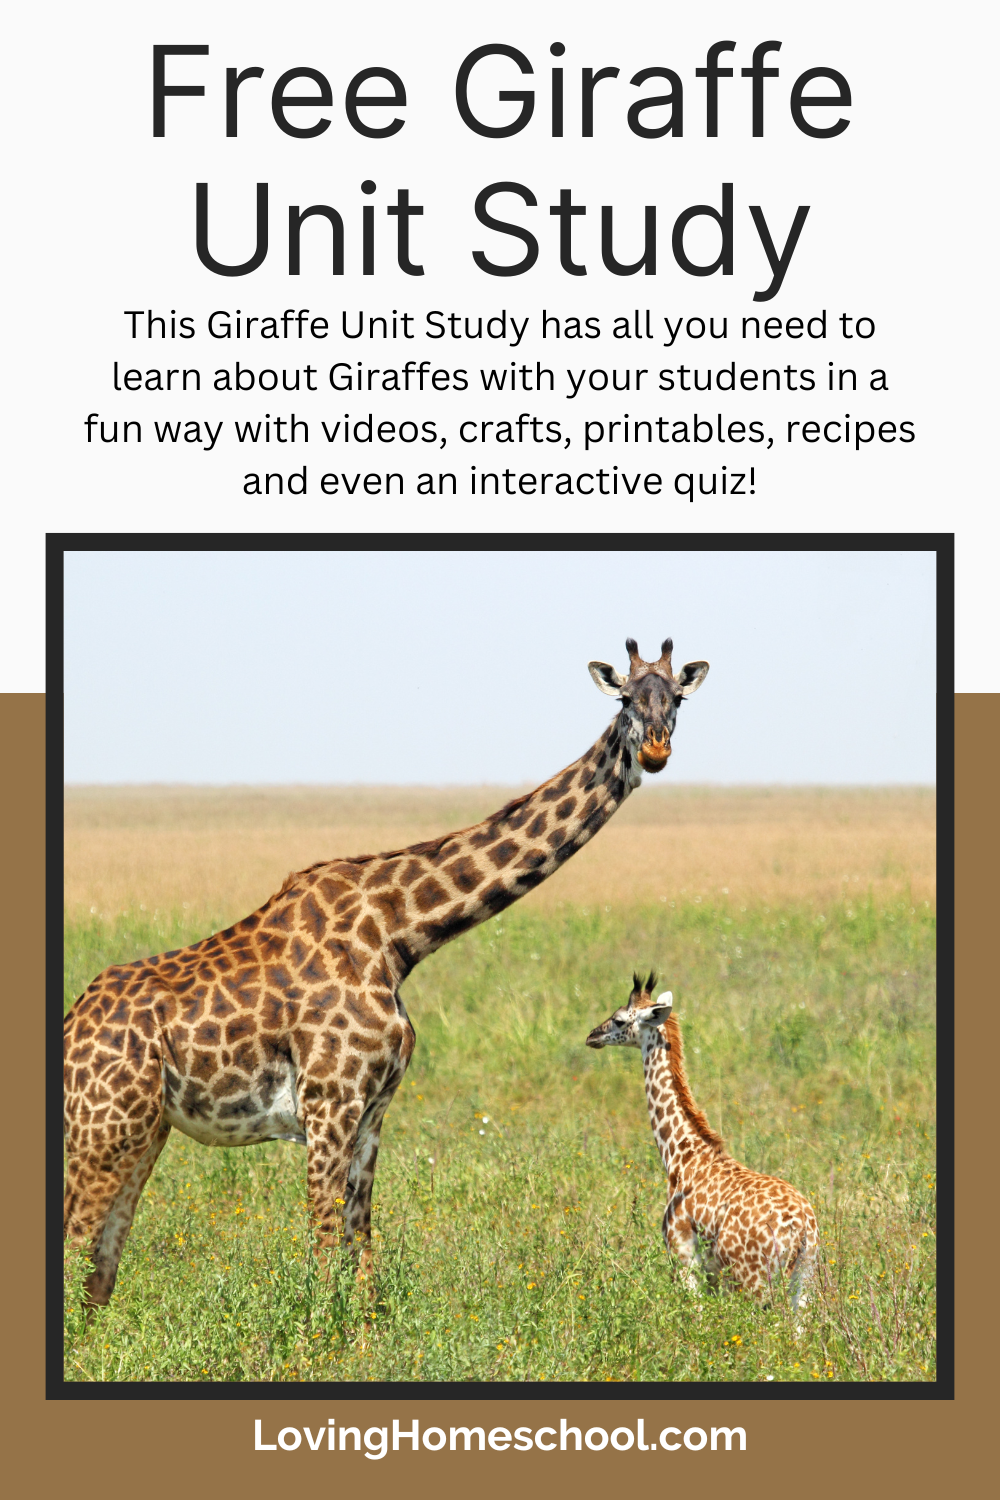 Free Giraffe Unit Study Pinterest Pin